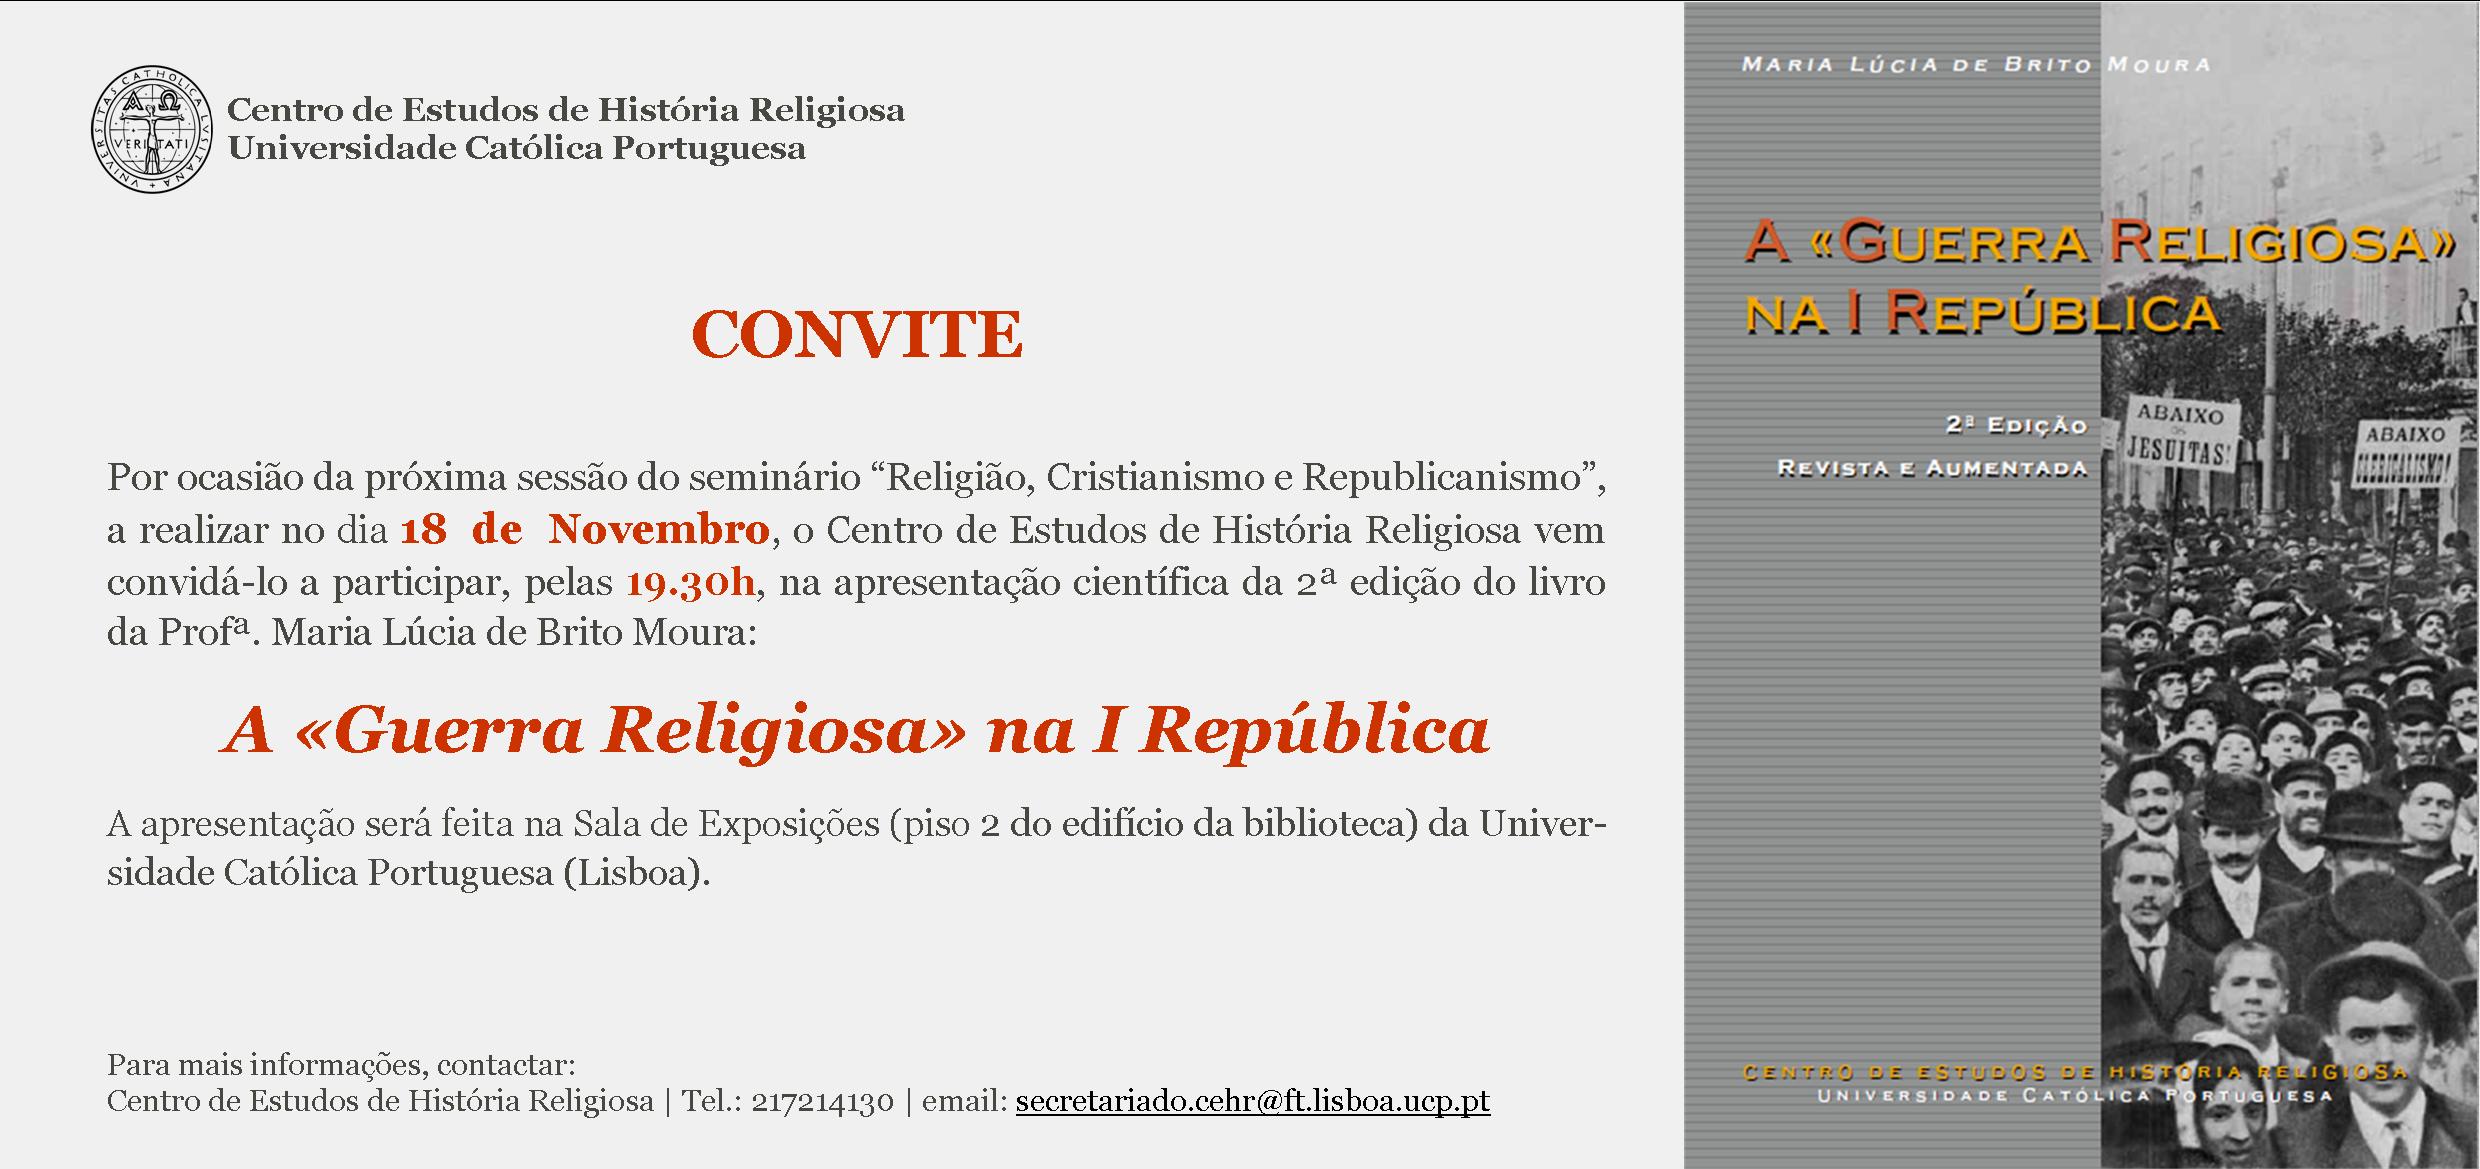 Apresentação científica do livro "A «Guerra Religiosa» na I República"